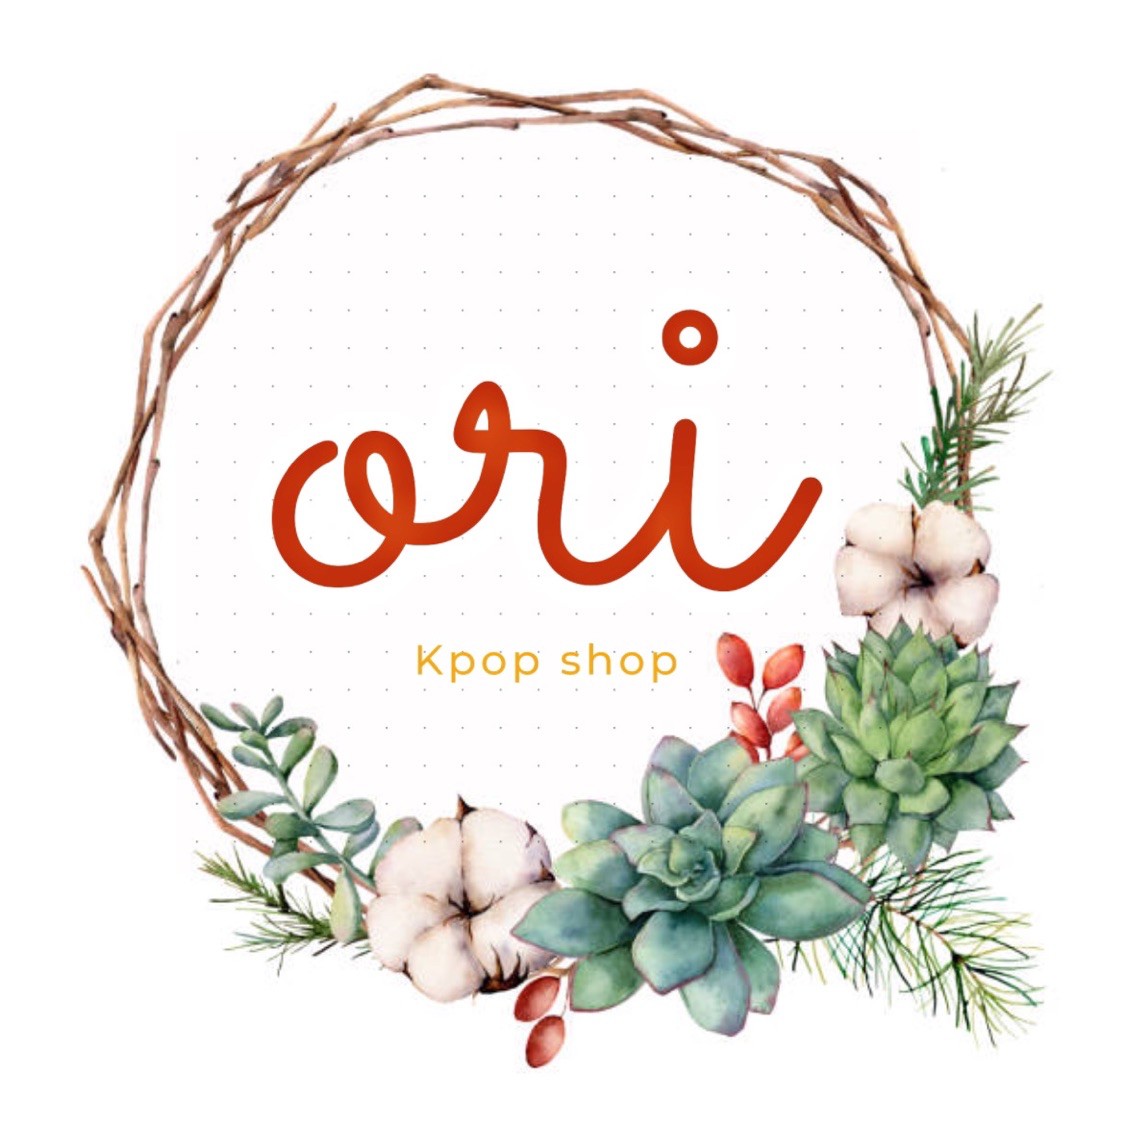 ORI Kpop shop